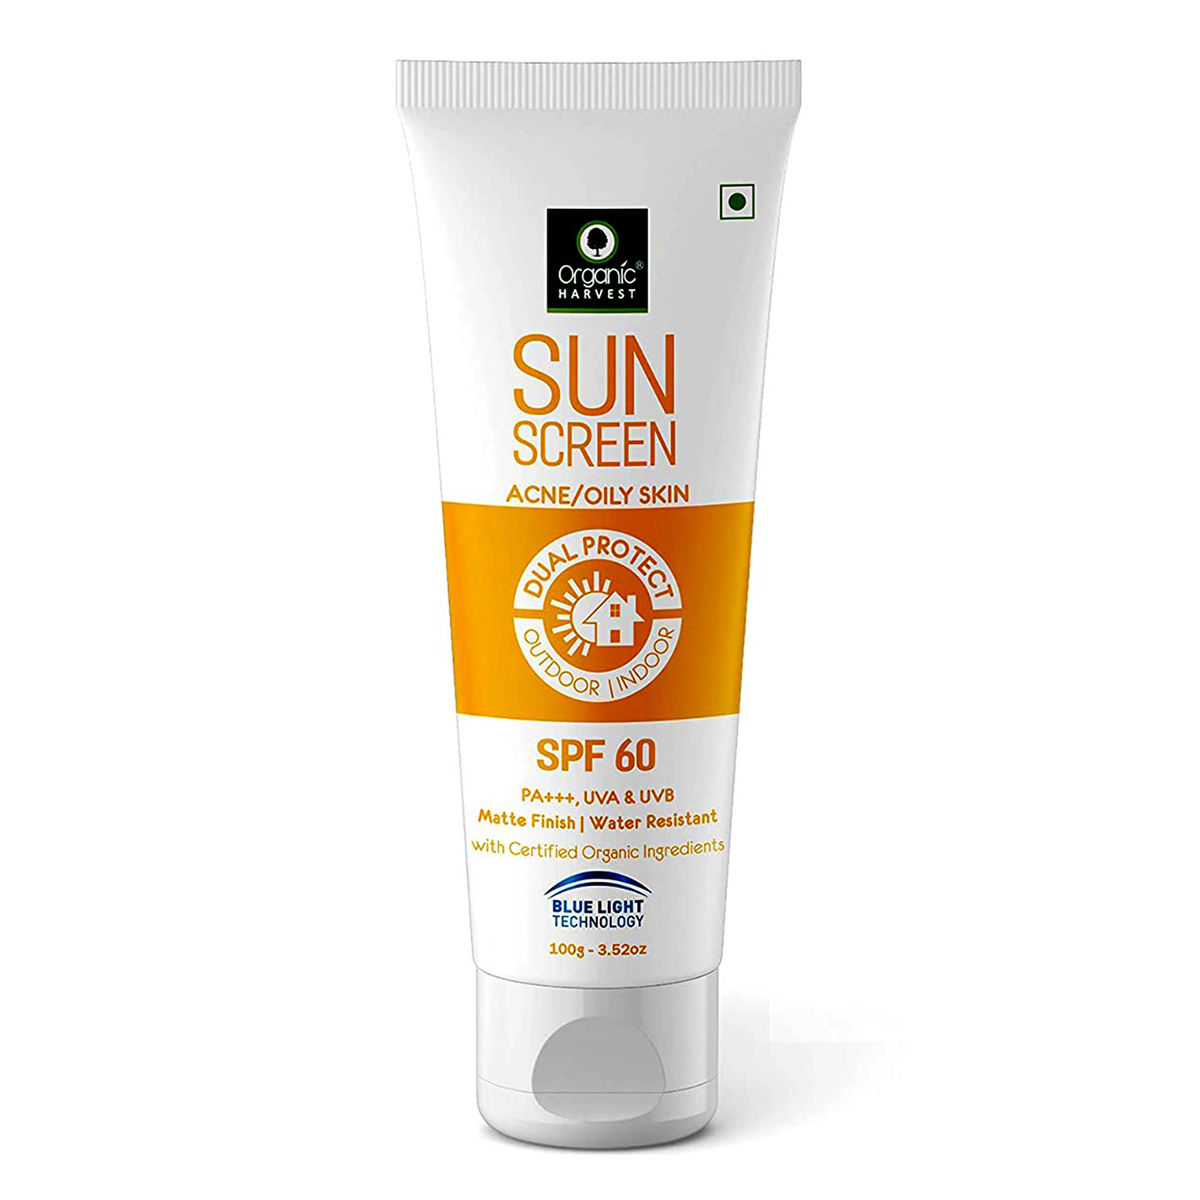 Buy Organic Harvest Sunscreen SPF 60 PA+++ UVA & UVB For Acne/Oily Skin, 100 gm Online